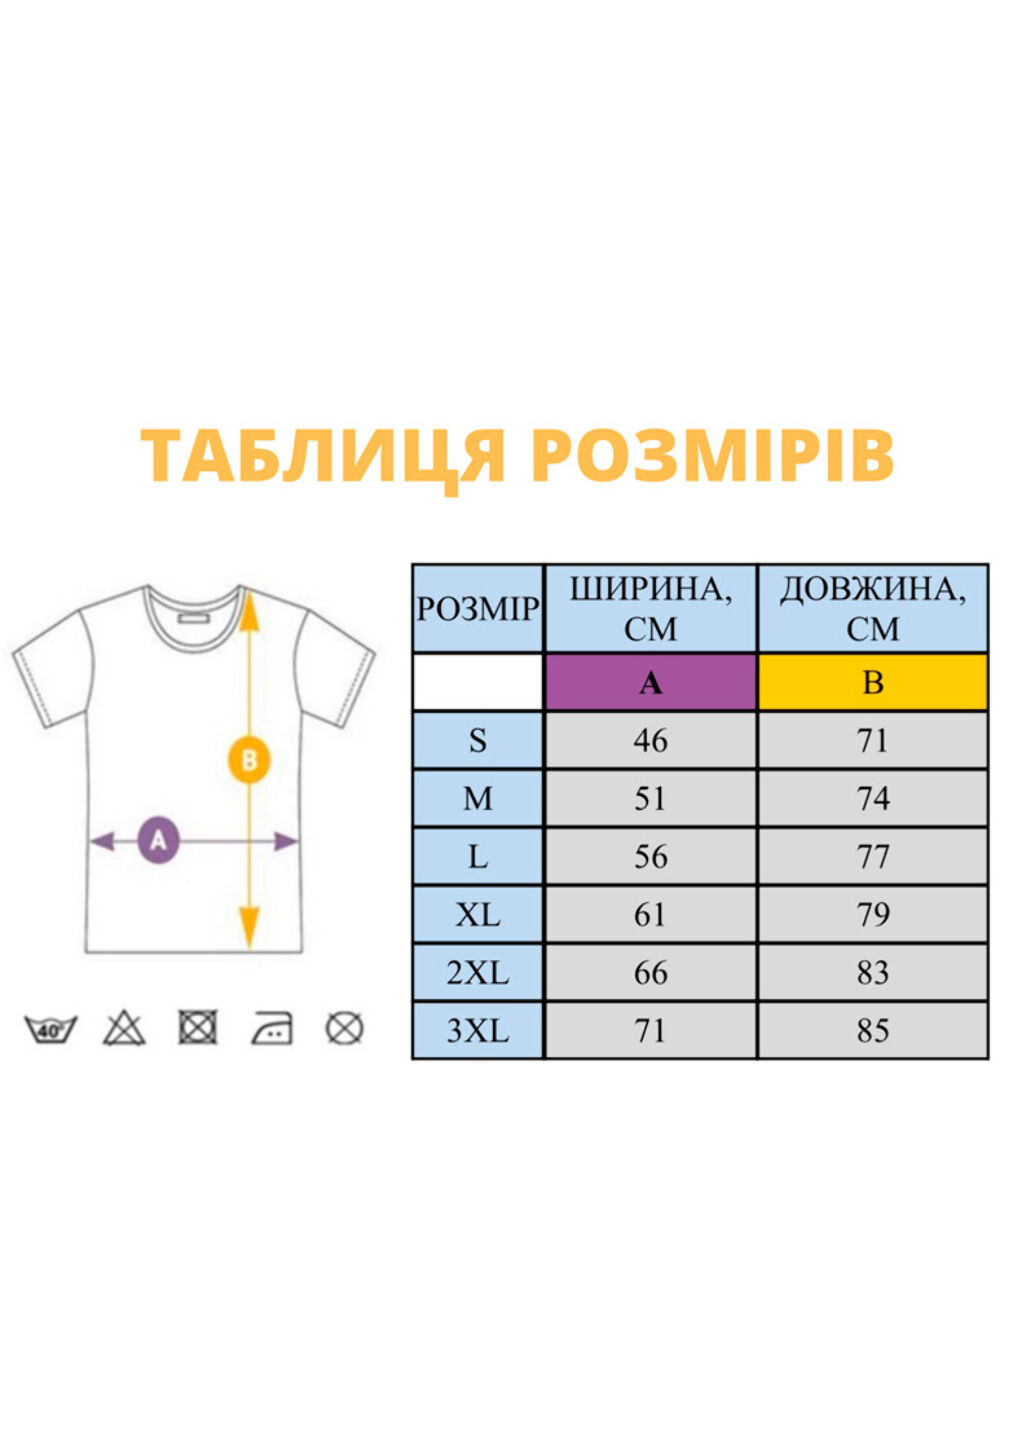 Желтая футболка етно з вишивкою 01-4 мужская желтый m No Brand